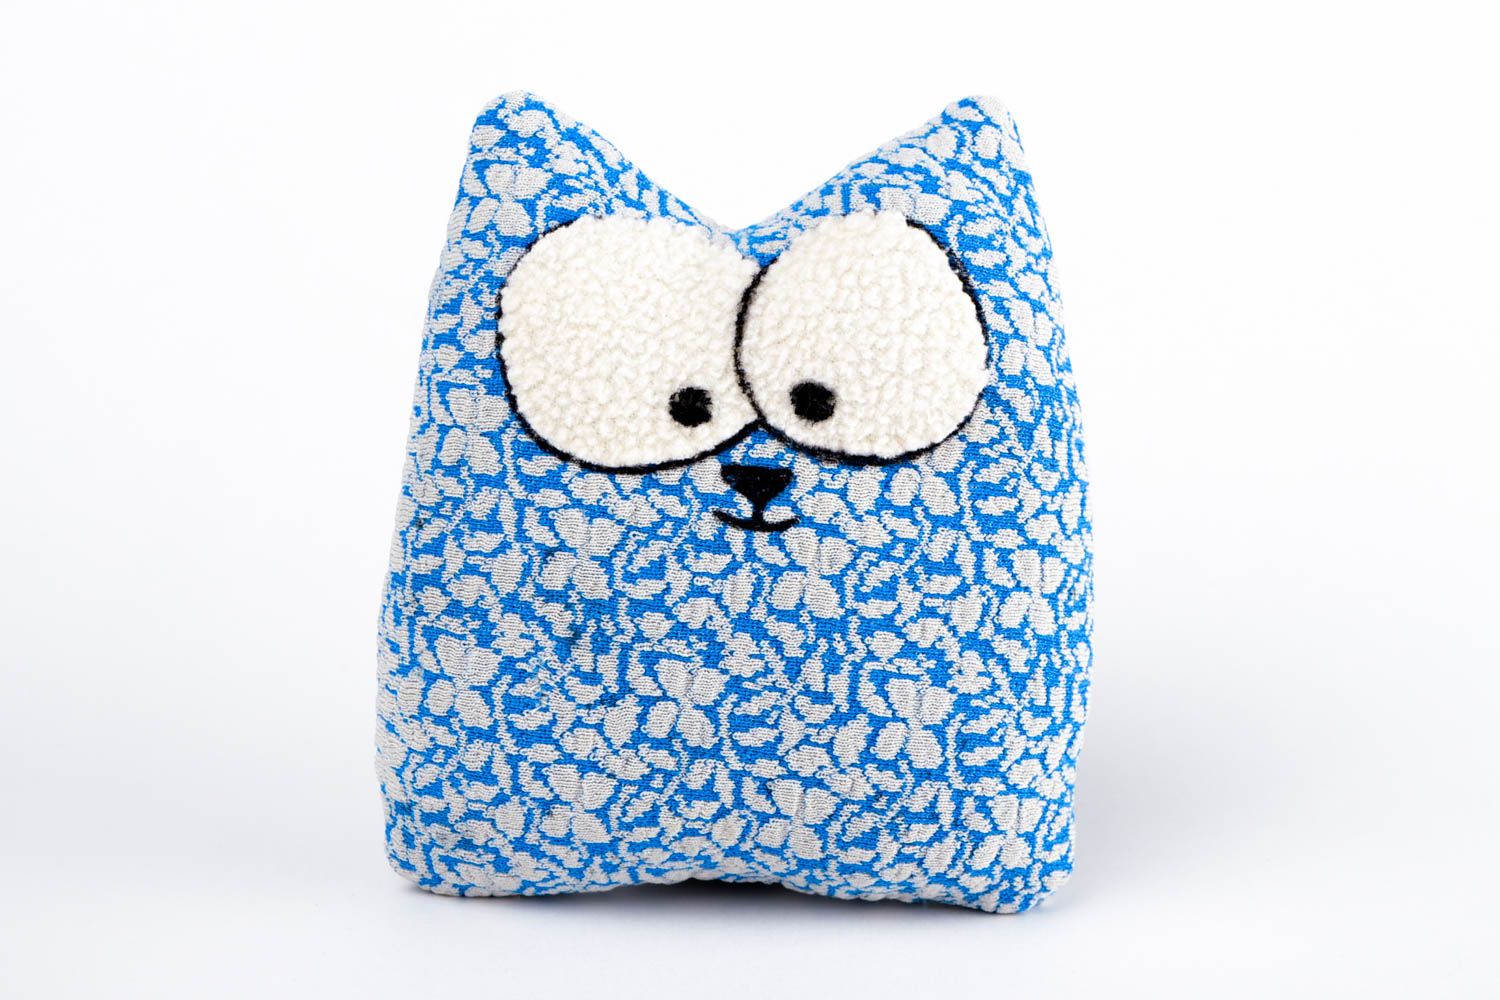 Игрушка из ткани игрушка кот ручной работы авторская игрушка голубая мягкая фото 3